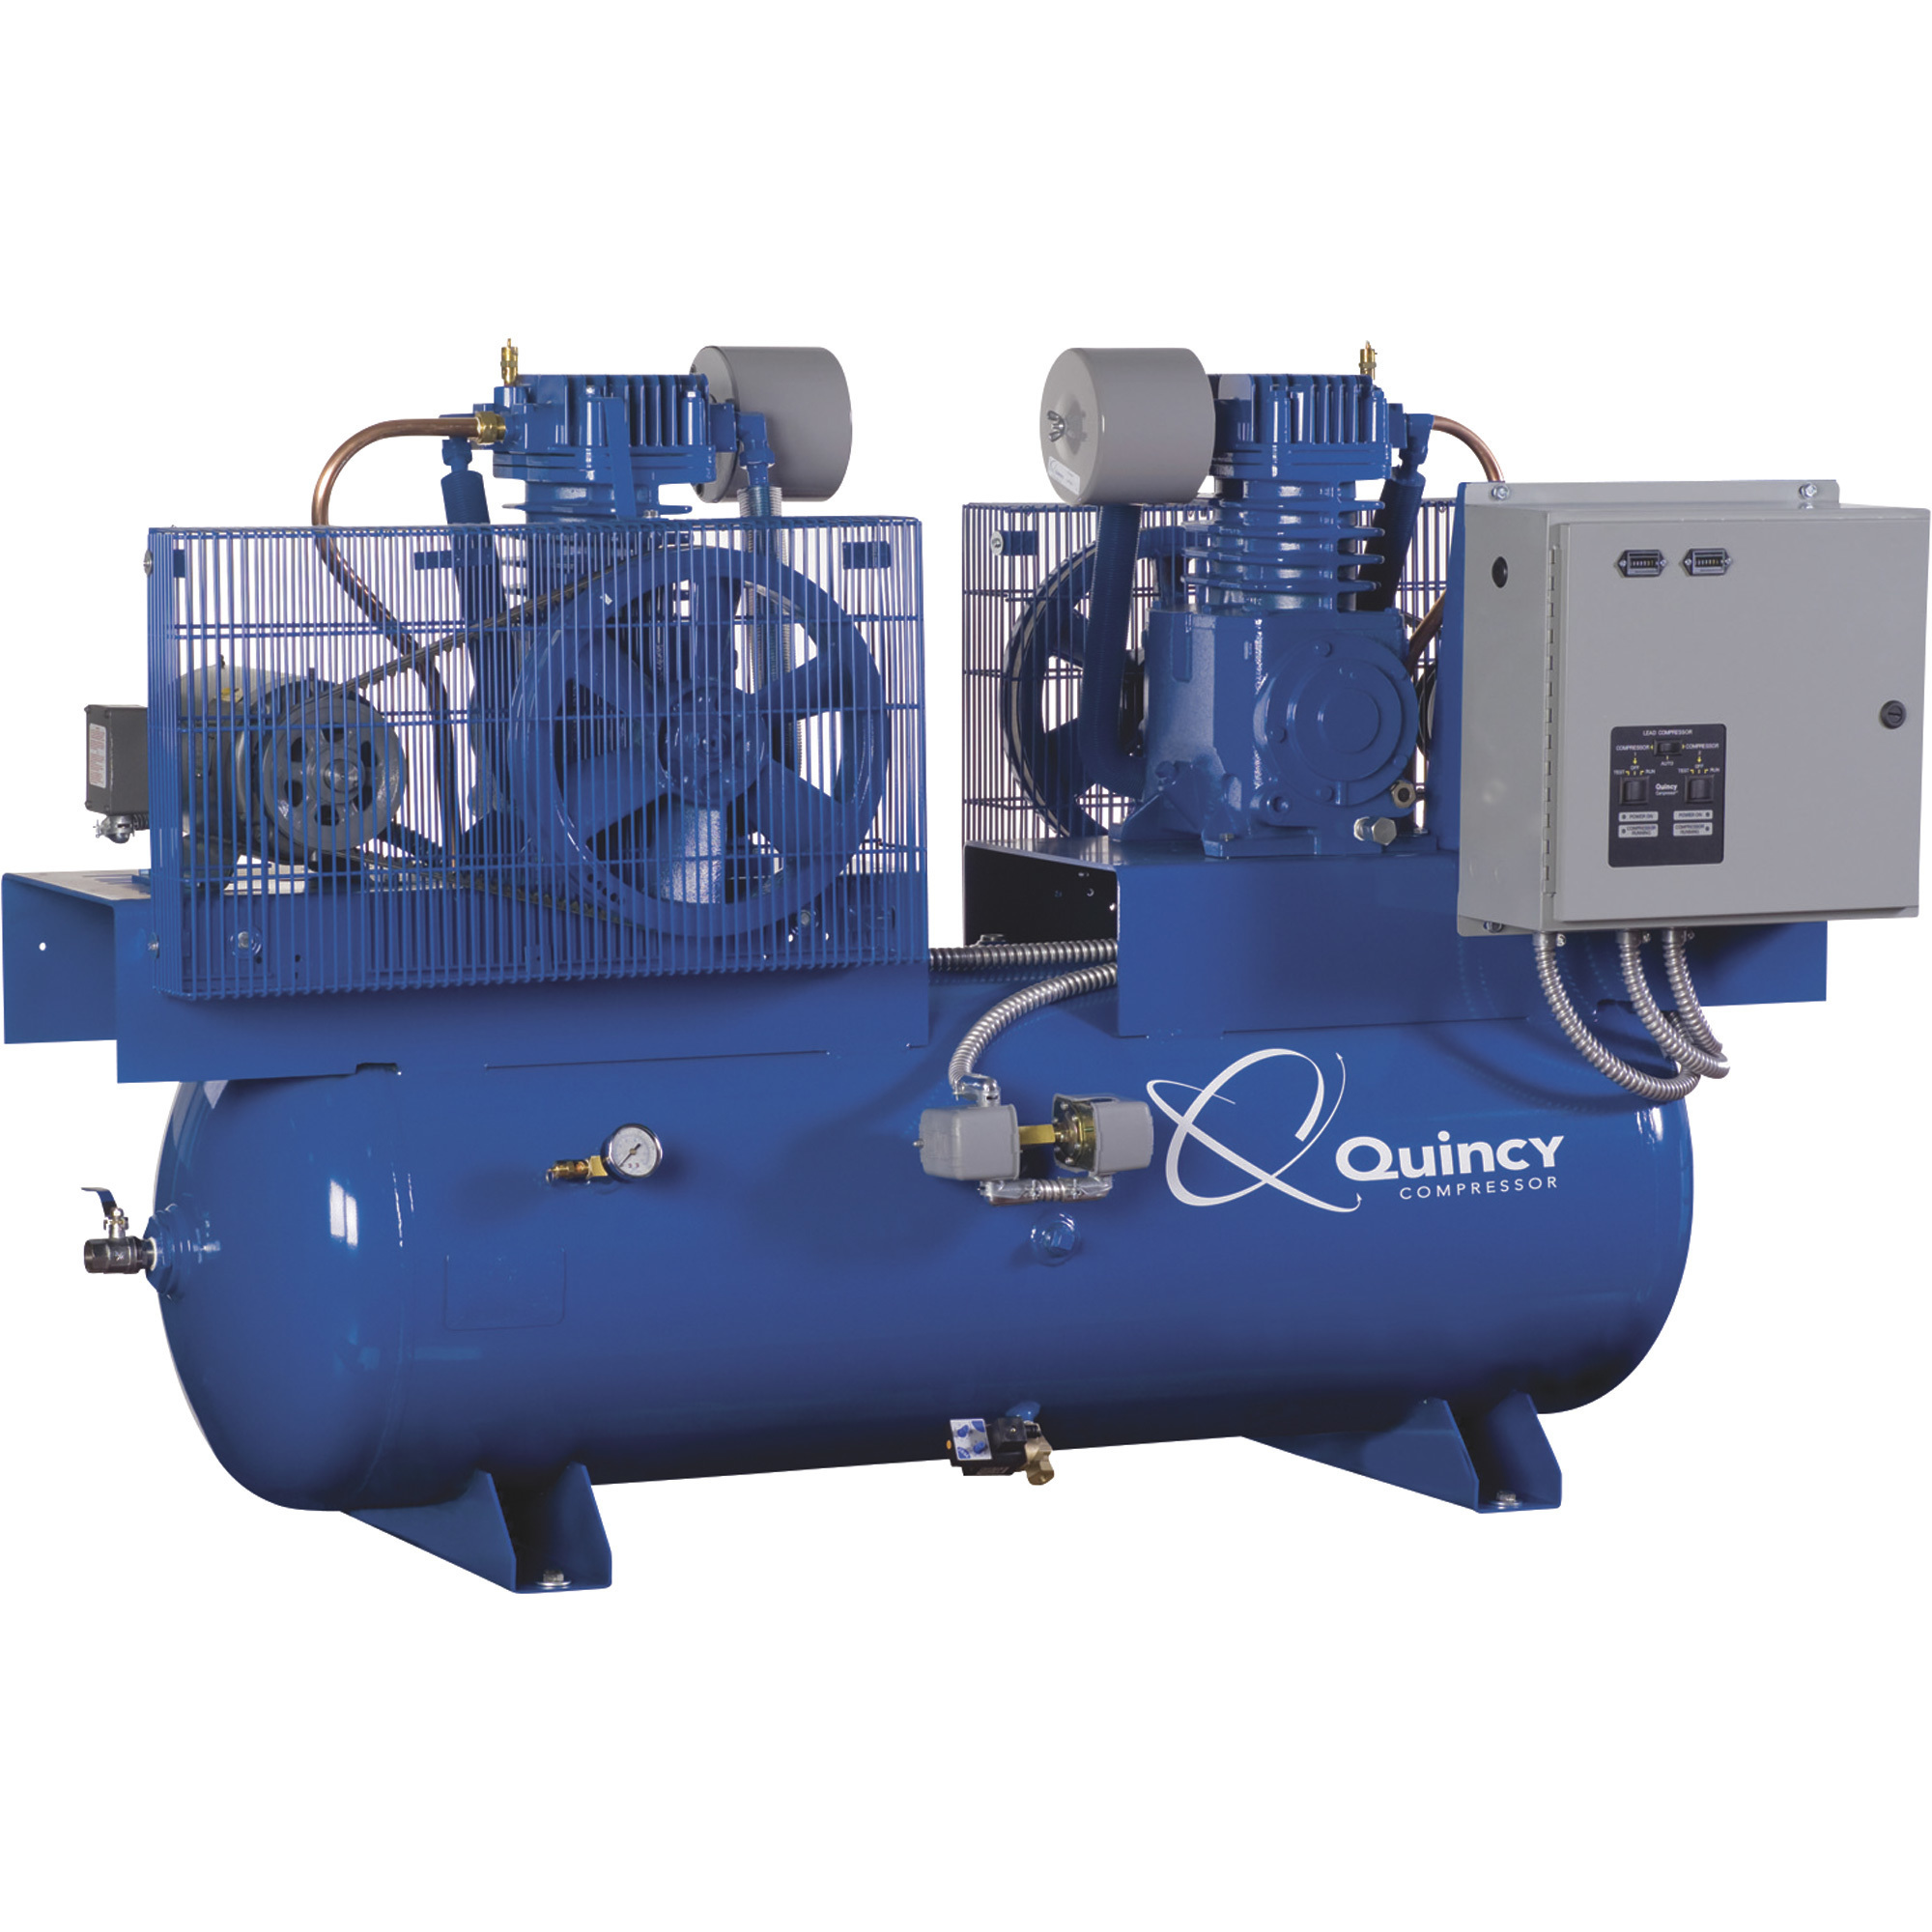 Quincy Compressor 2020013907